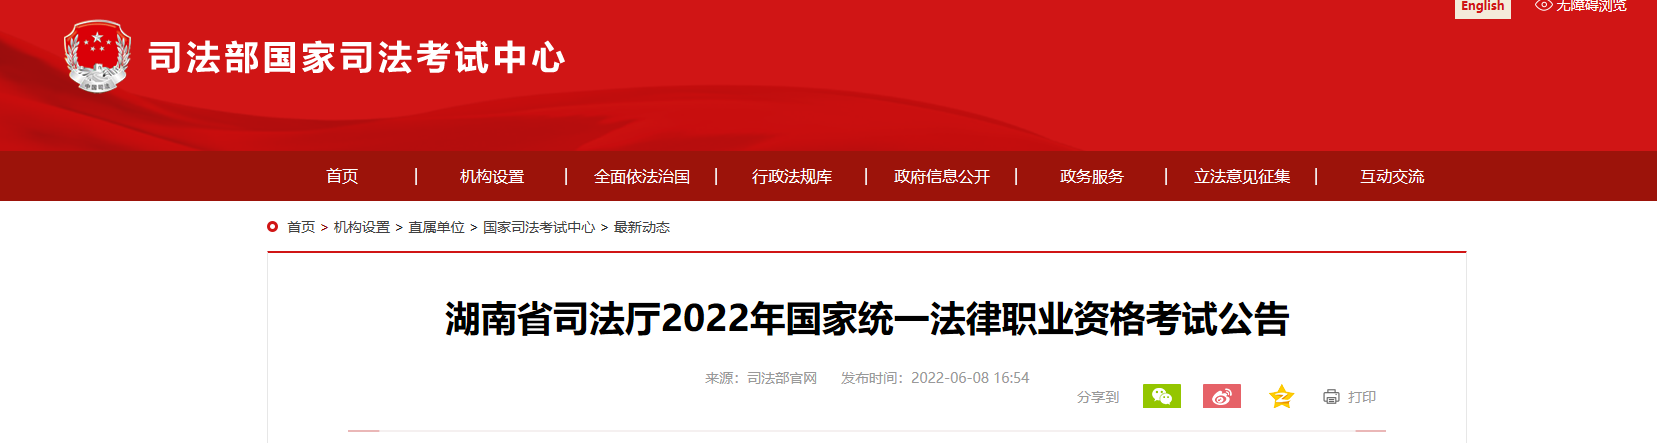 2022年湖南国家统一法律职业资格考试资格审核及相关公告